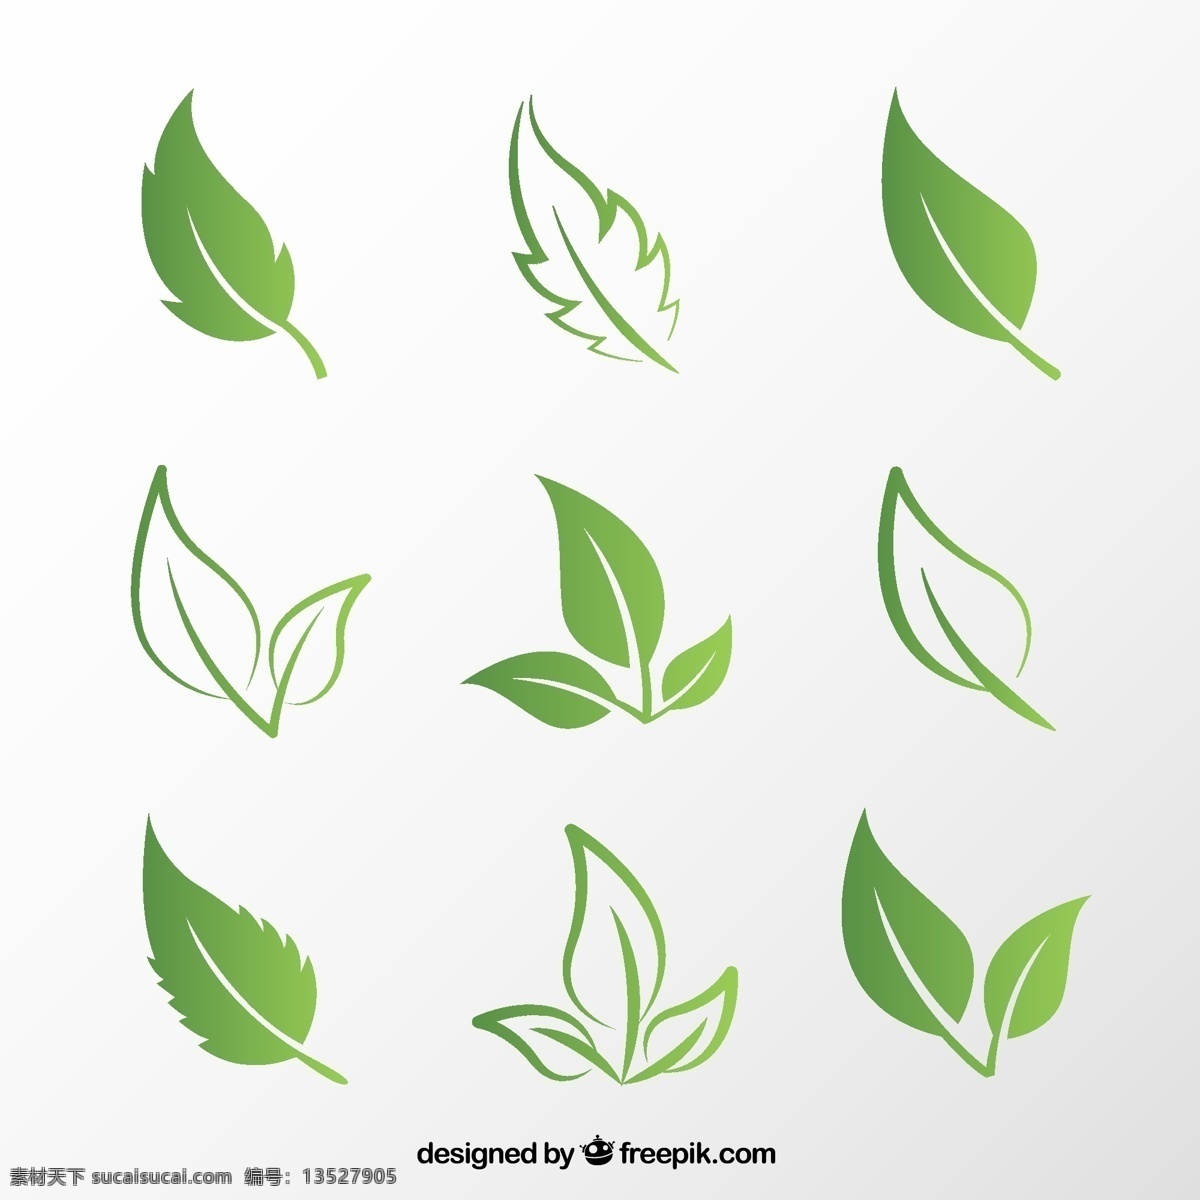 创意绿叶设计 创意绿叶 树叶图标 植物 树叶 叶子 矢量图